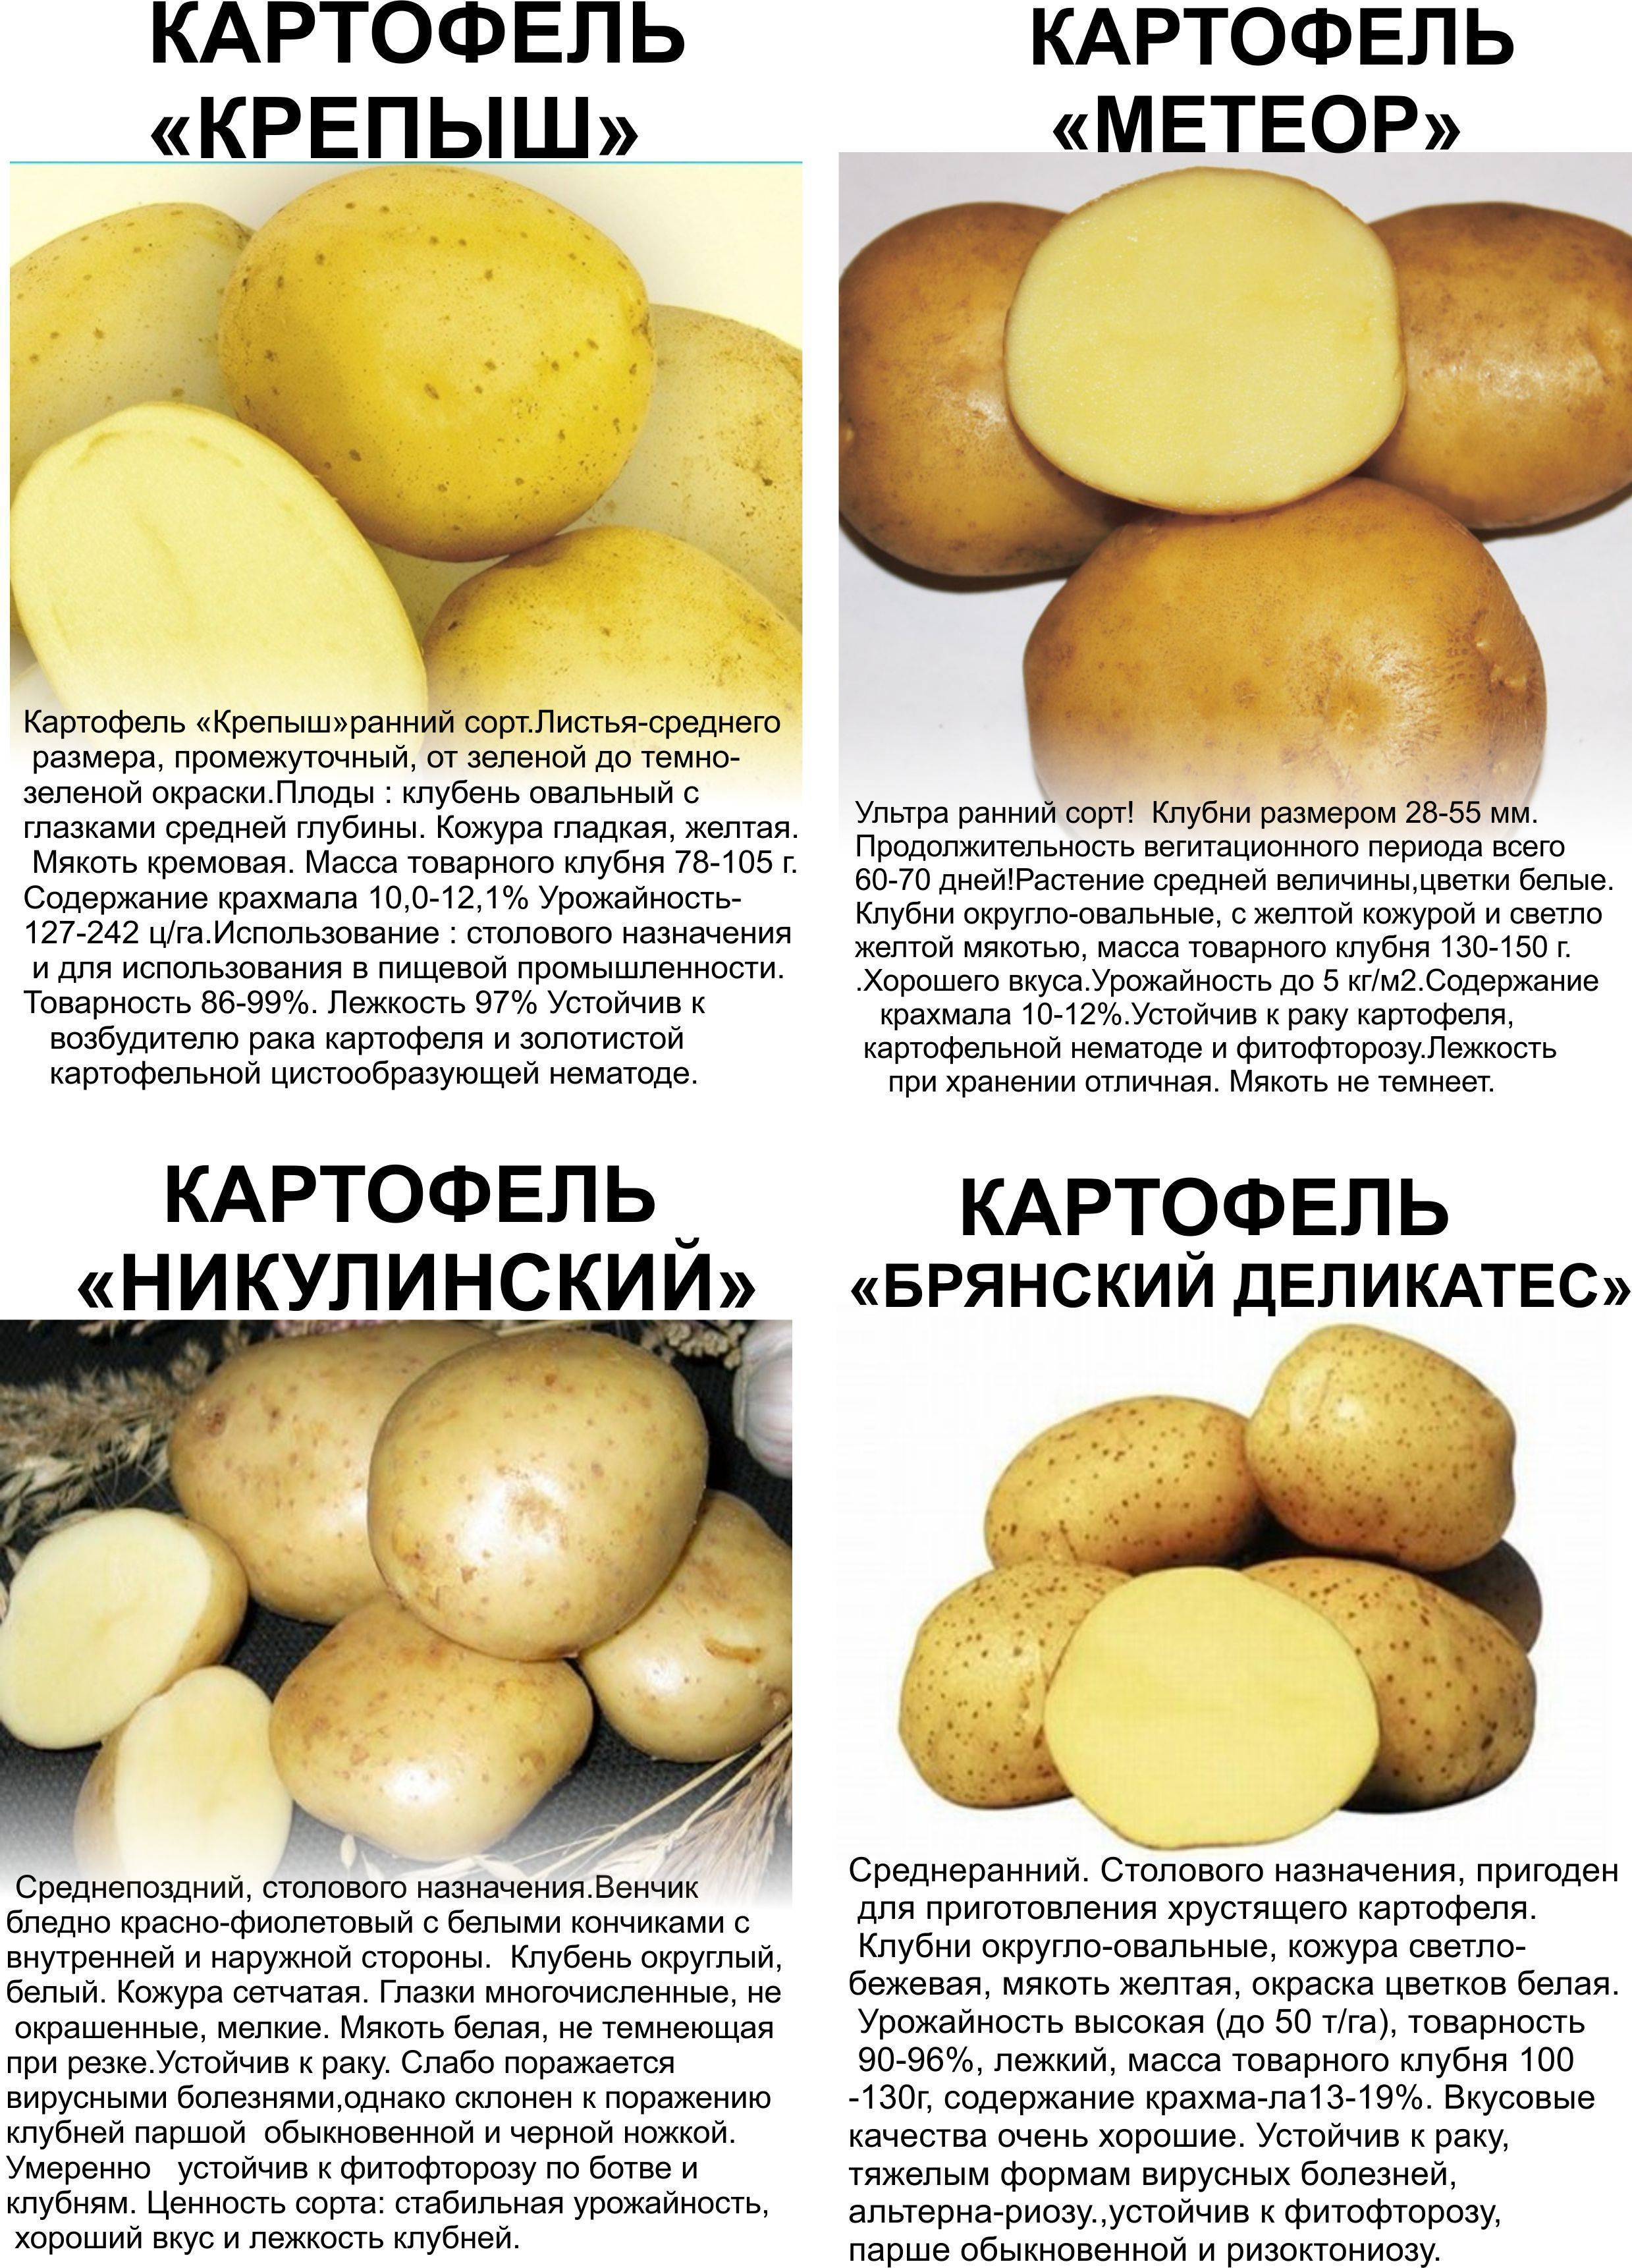 Картофель метеор: описание и характеристика сорта, фото, отзывы